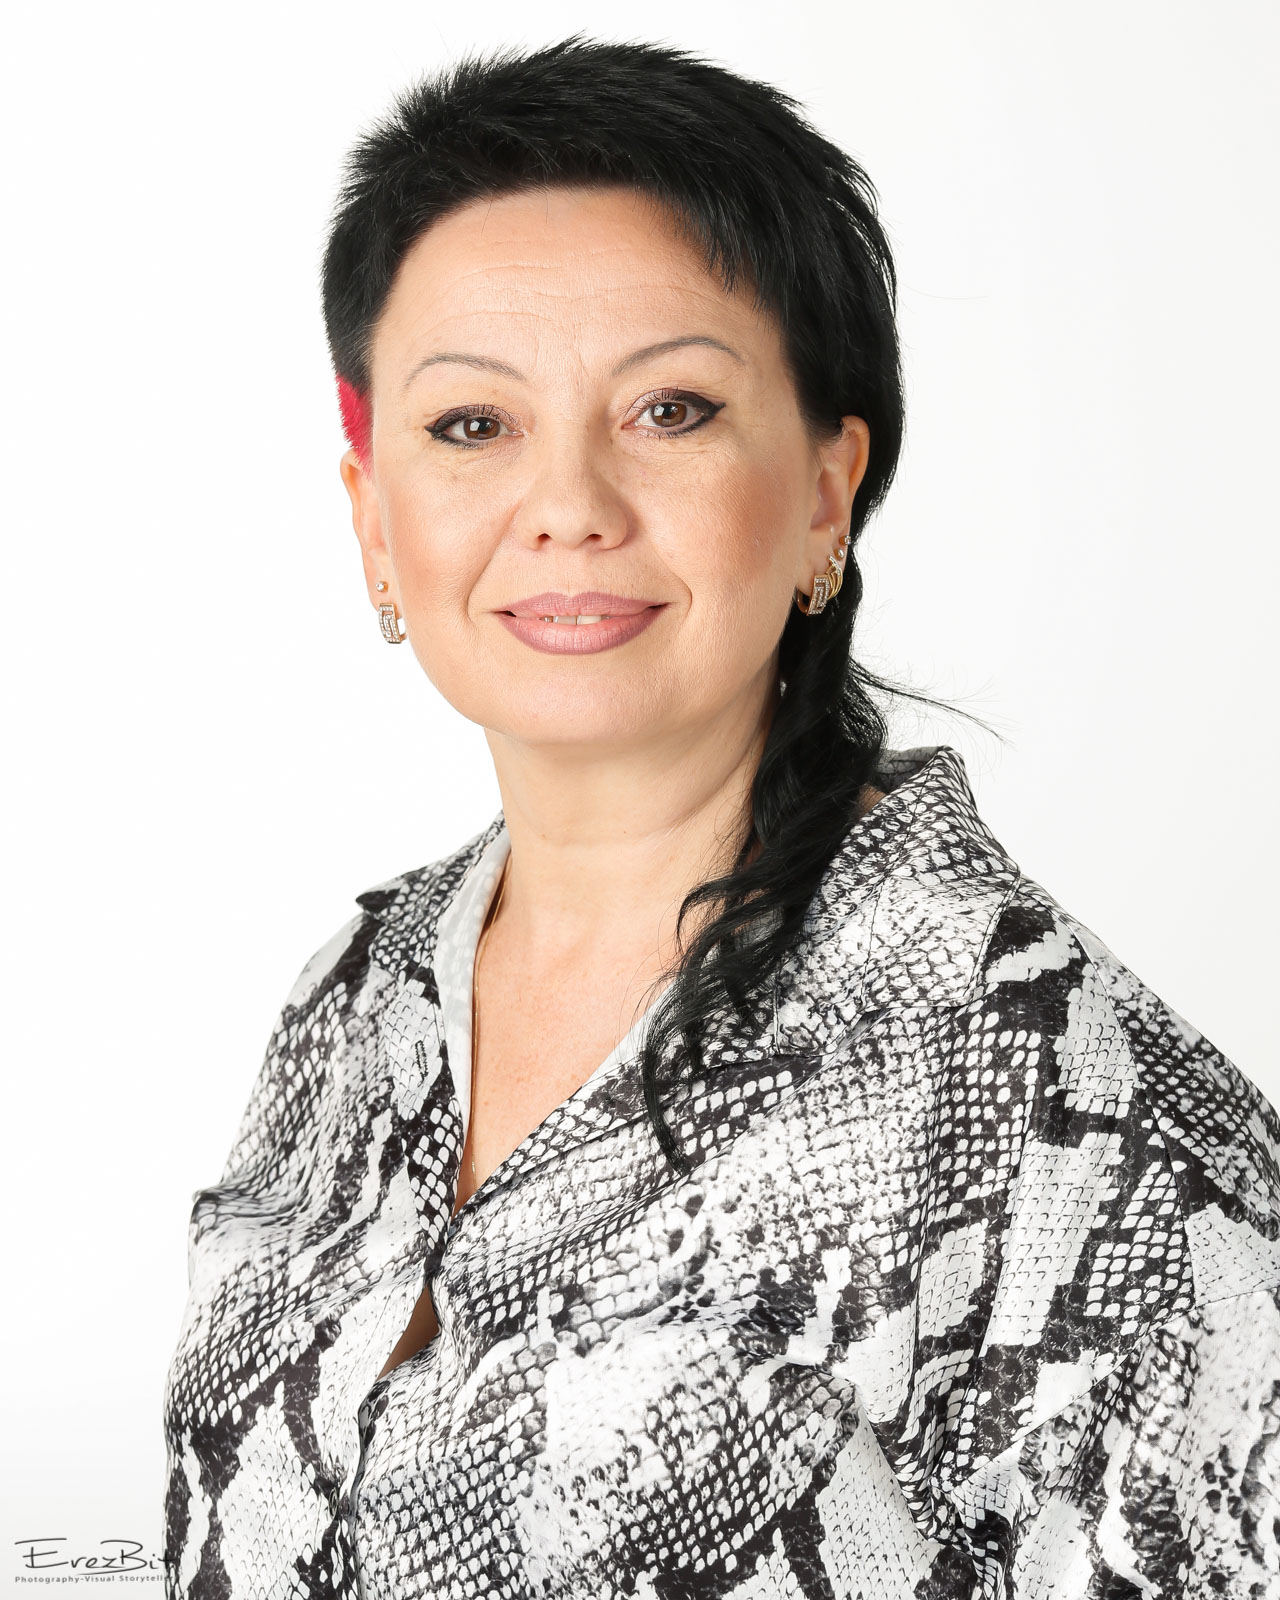 Dr. Oksana Nir